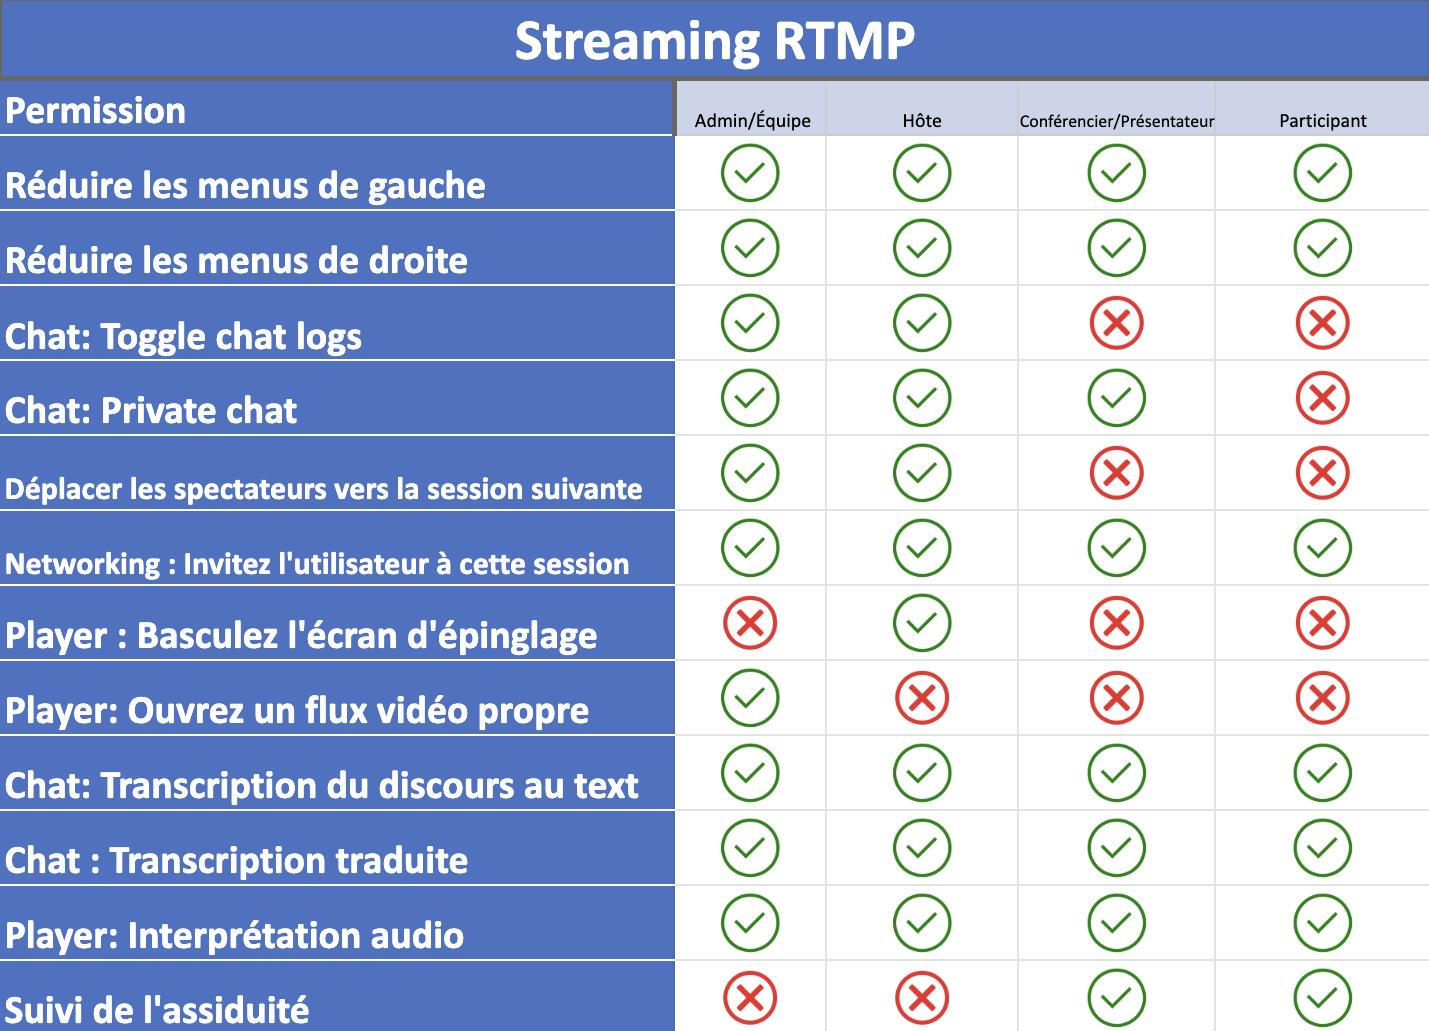 Tableau montrant ce que chaque niveau de permission peut faire dans le streaming RTMP